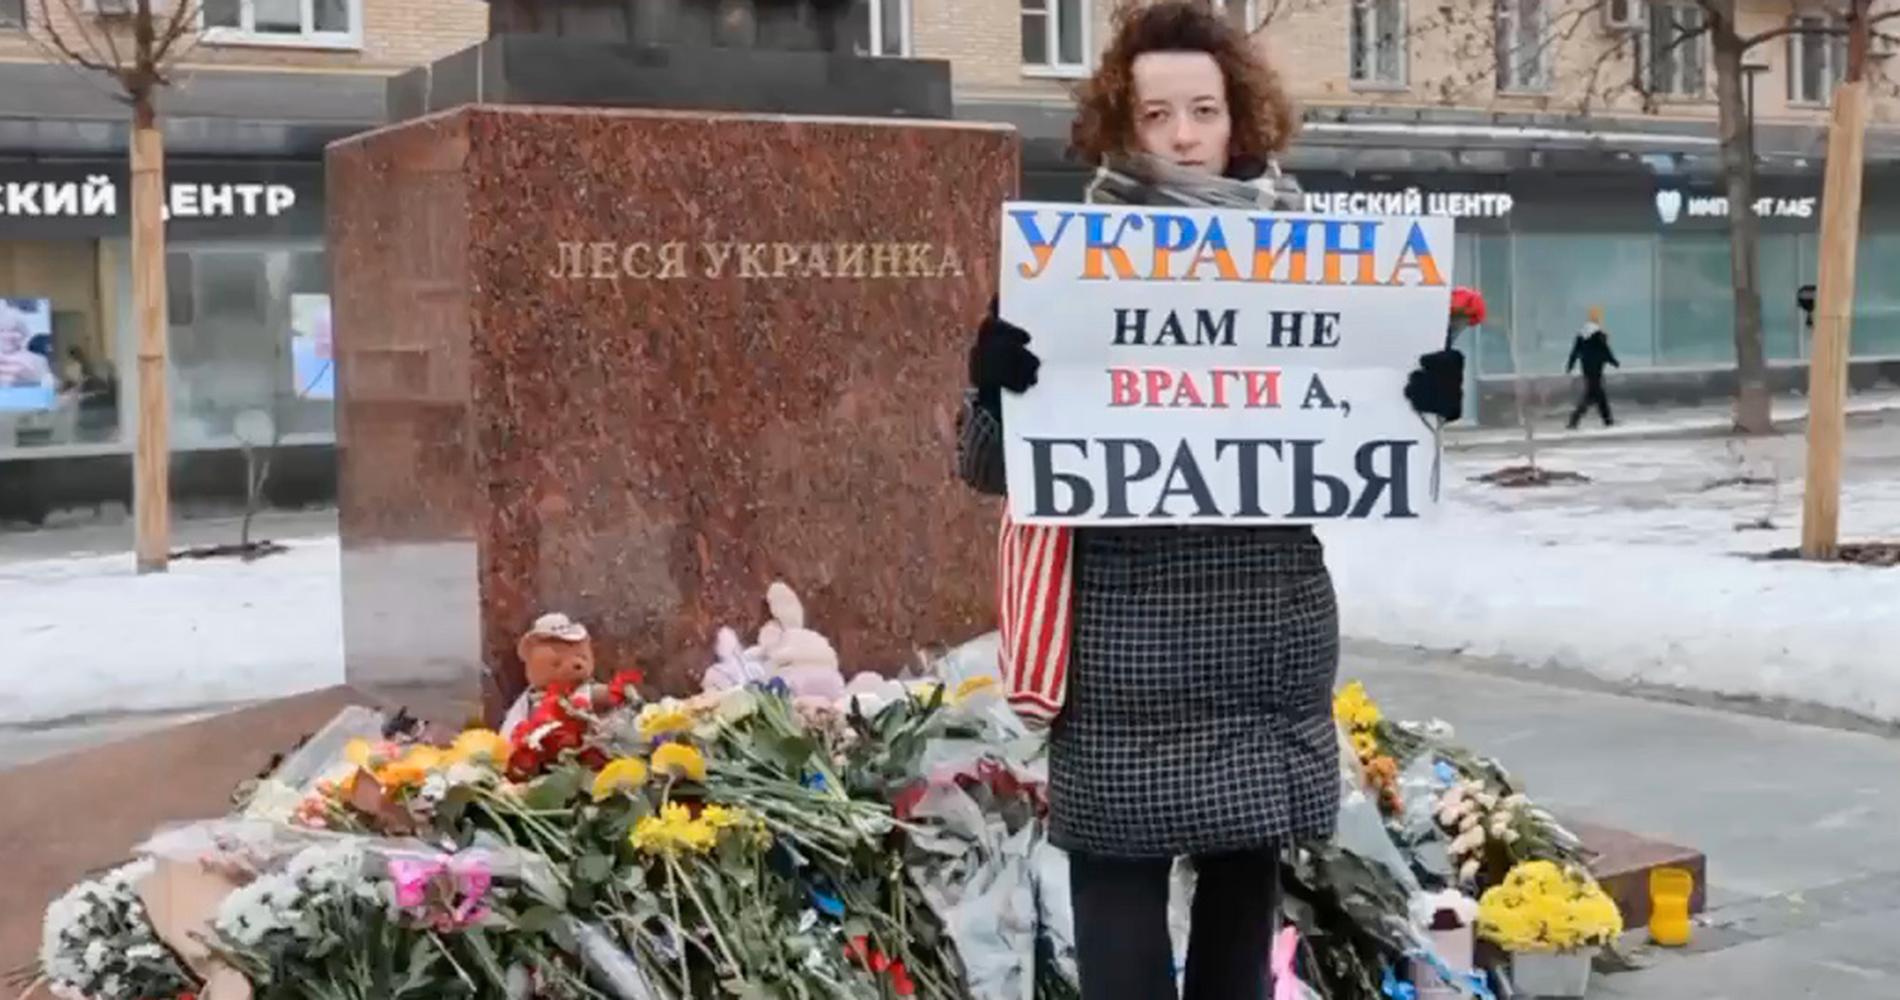 Nejlikorna slut i Moskva efter Dnipro-attacken